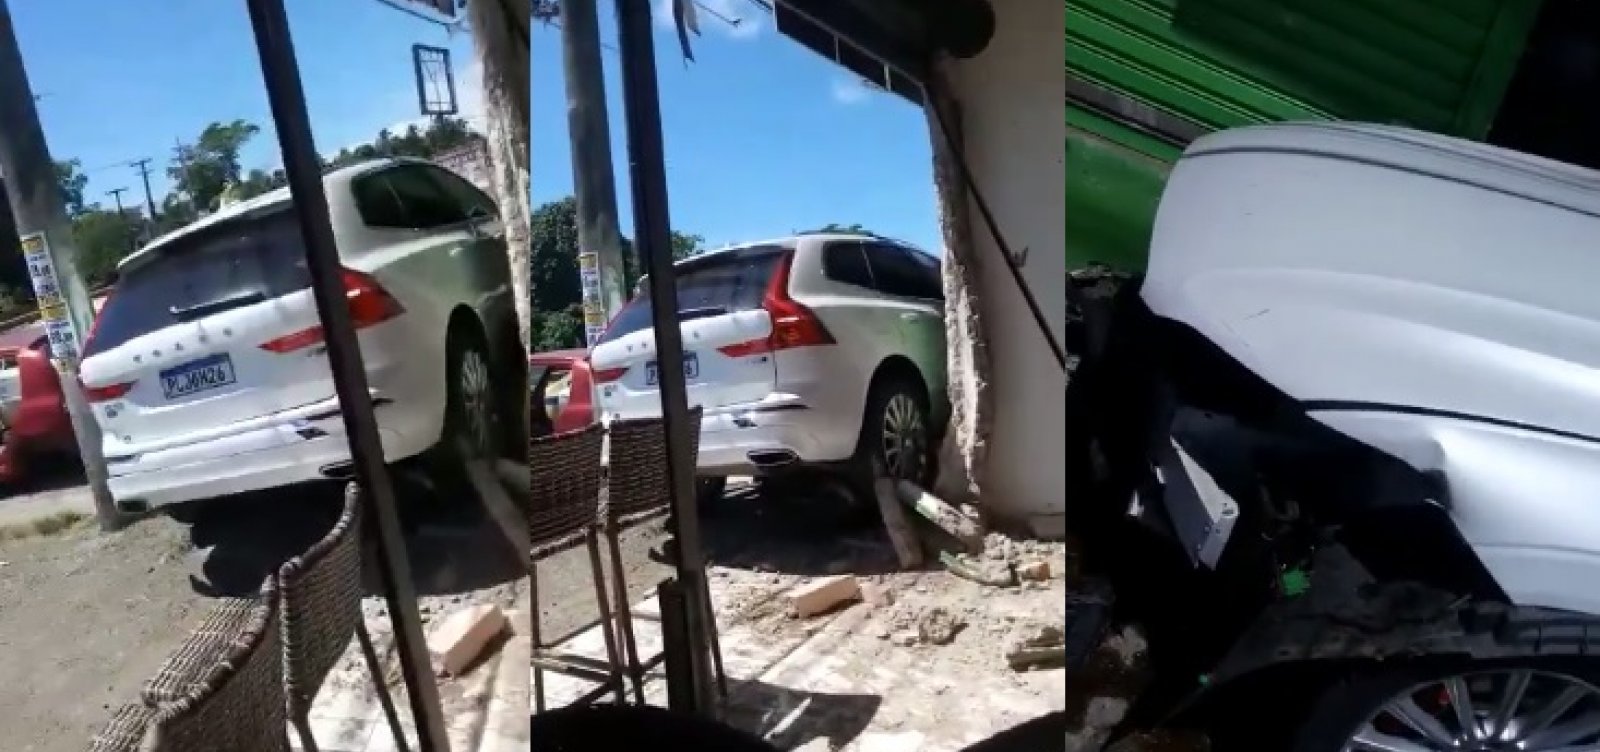 Igor Kannário perde controle de carro, atinge lojas e abandona veículo na Estrada do Coco